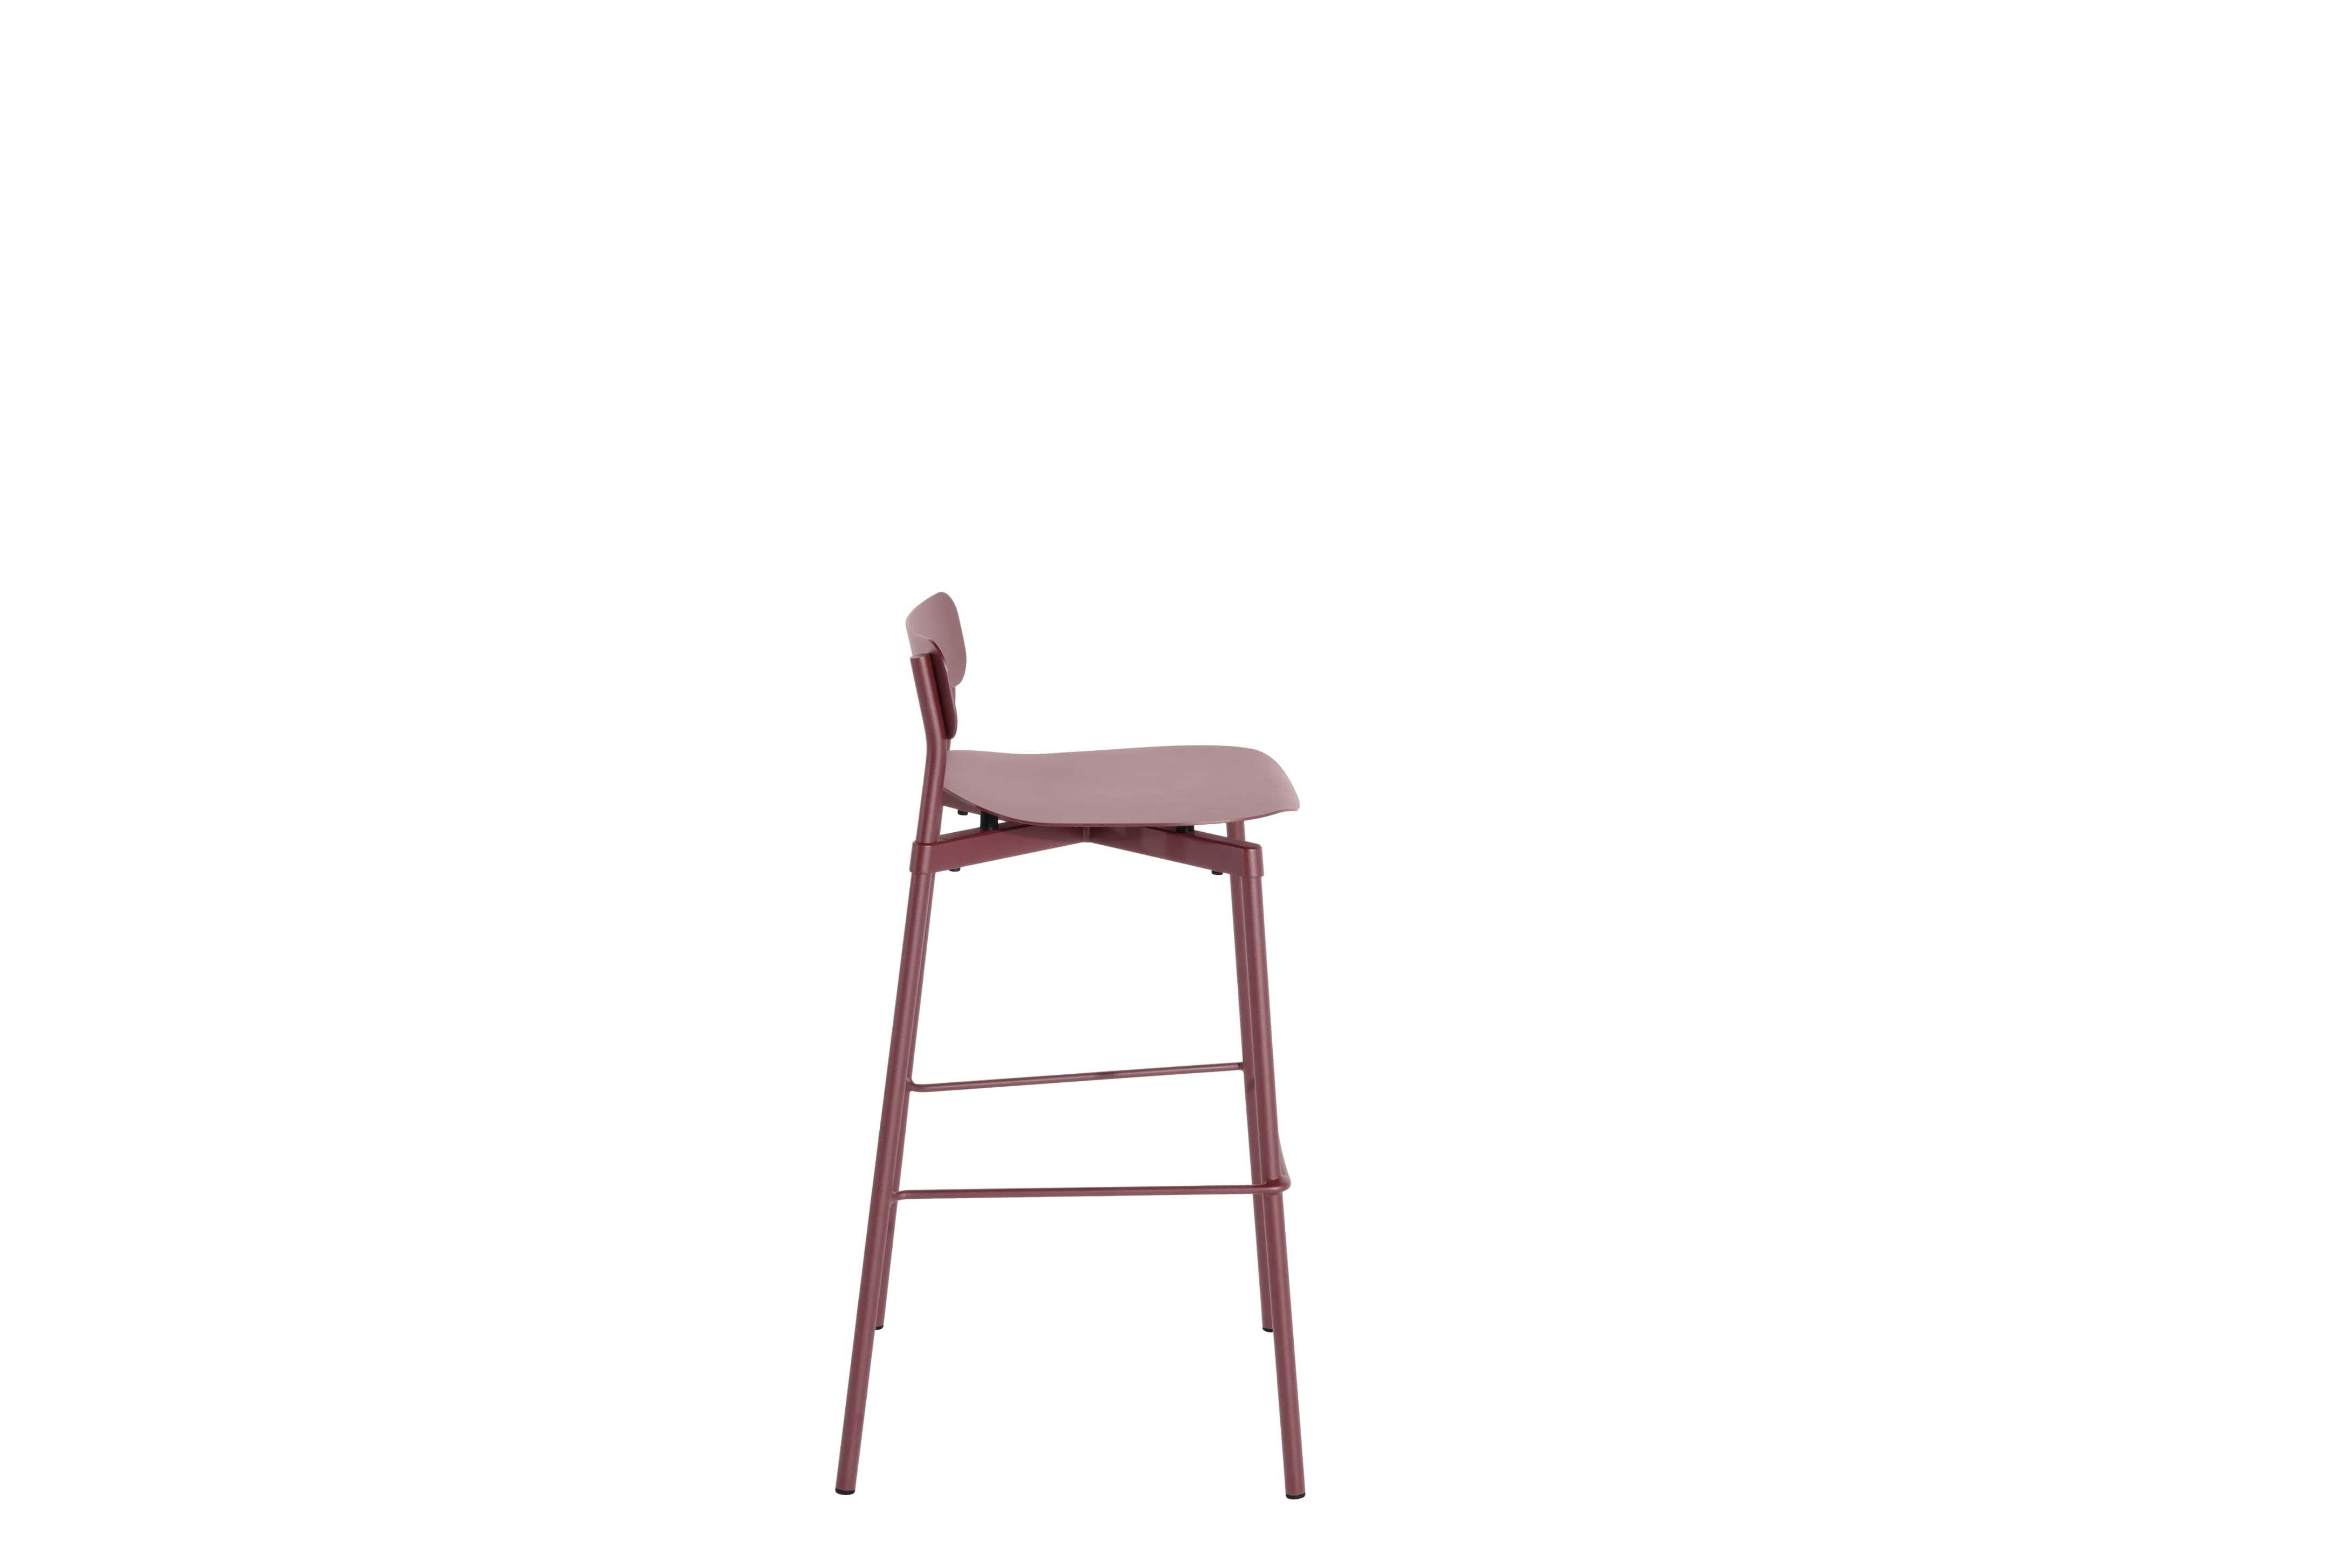 Petite Friture Large Fromme Tabouret de bar en aluminium brun-rouge par Tom Chung, 2020

La collection S/One se distingue par sa ligne épurée et son design compact. Les absorbeurs placés sous les sièges leur confèrent une flexibilité souple et très